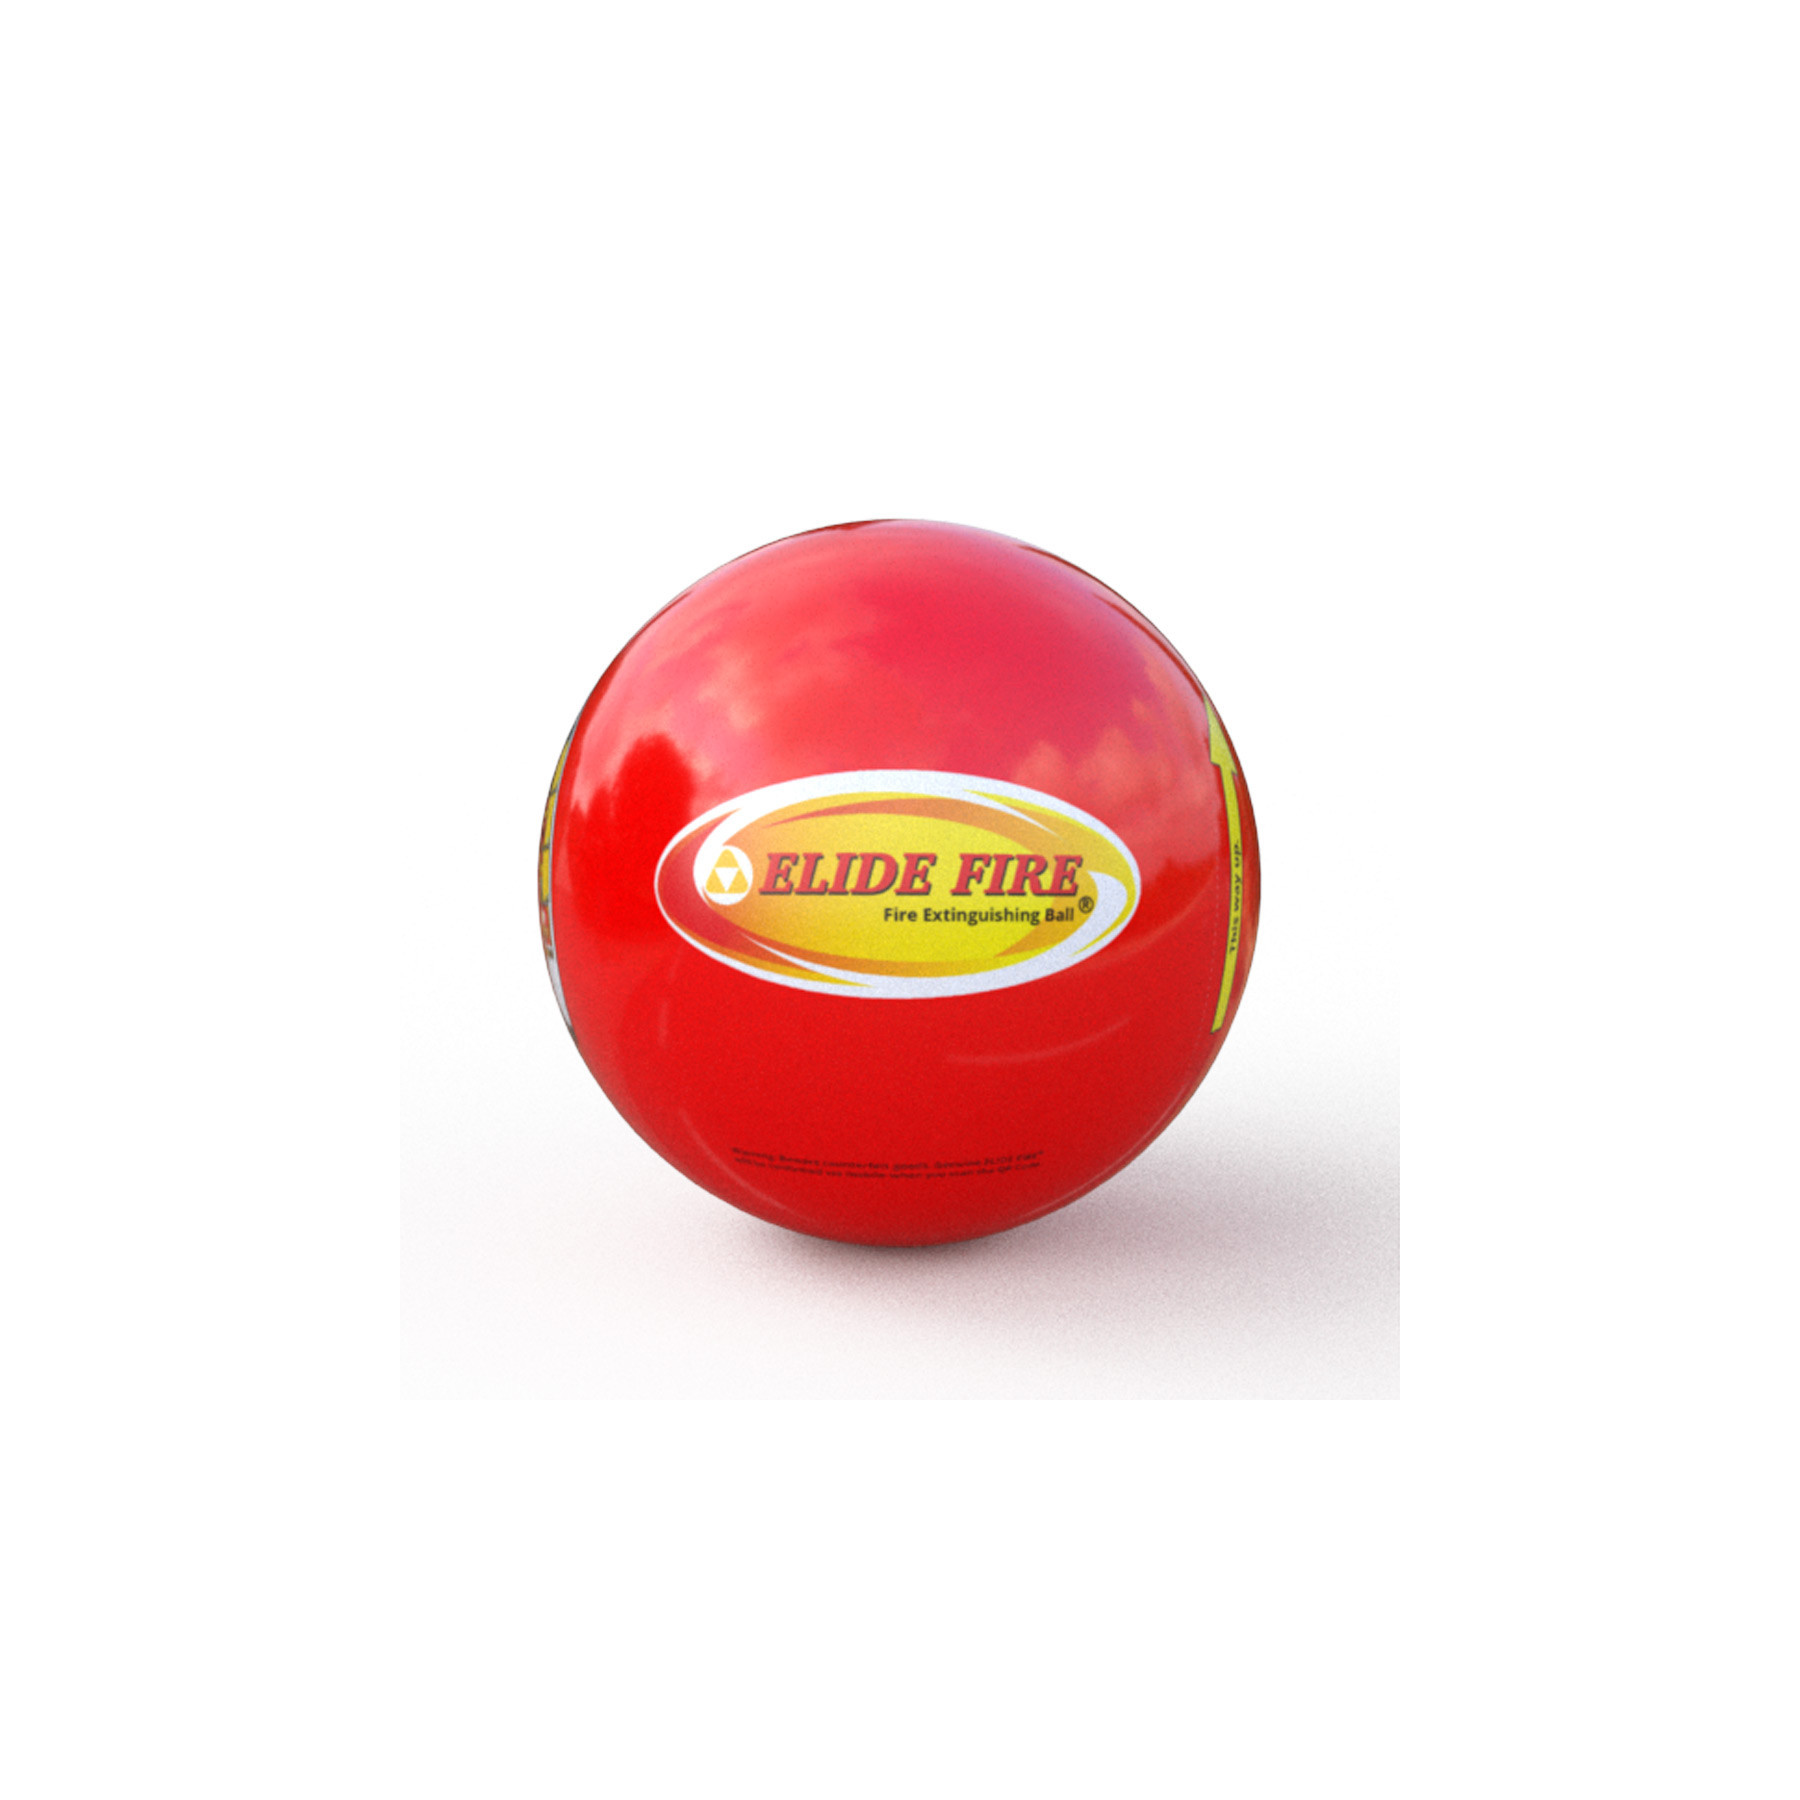 Mini Boule anti-feu - Elide Fire